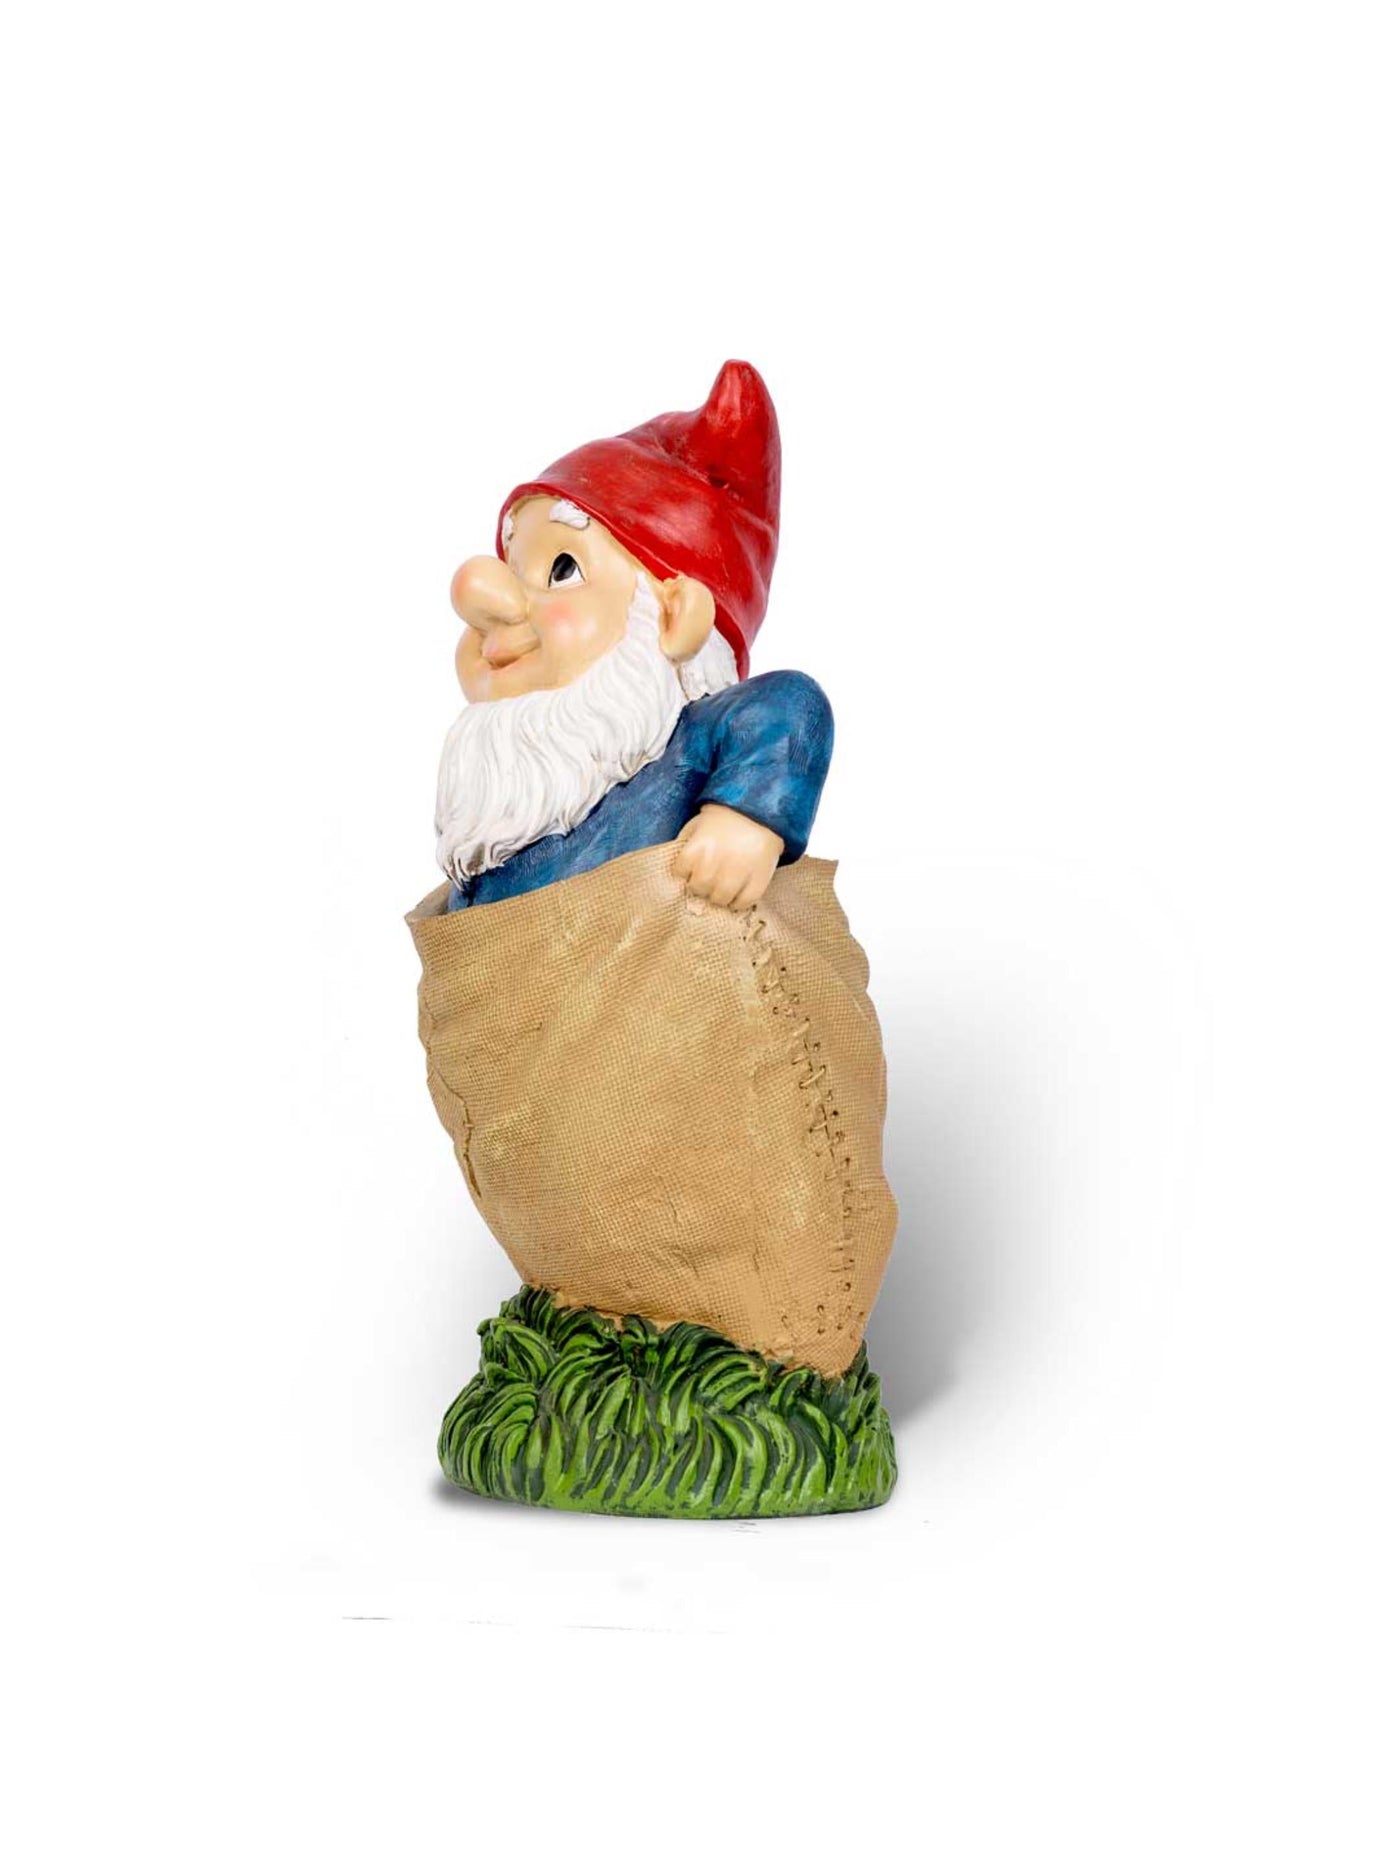 Garden Decor - Gnome in a Sack Race